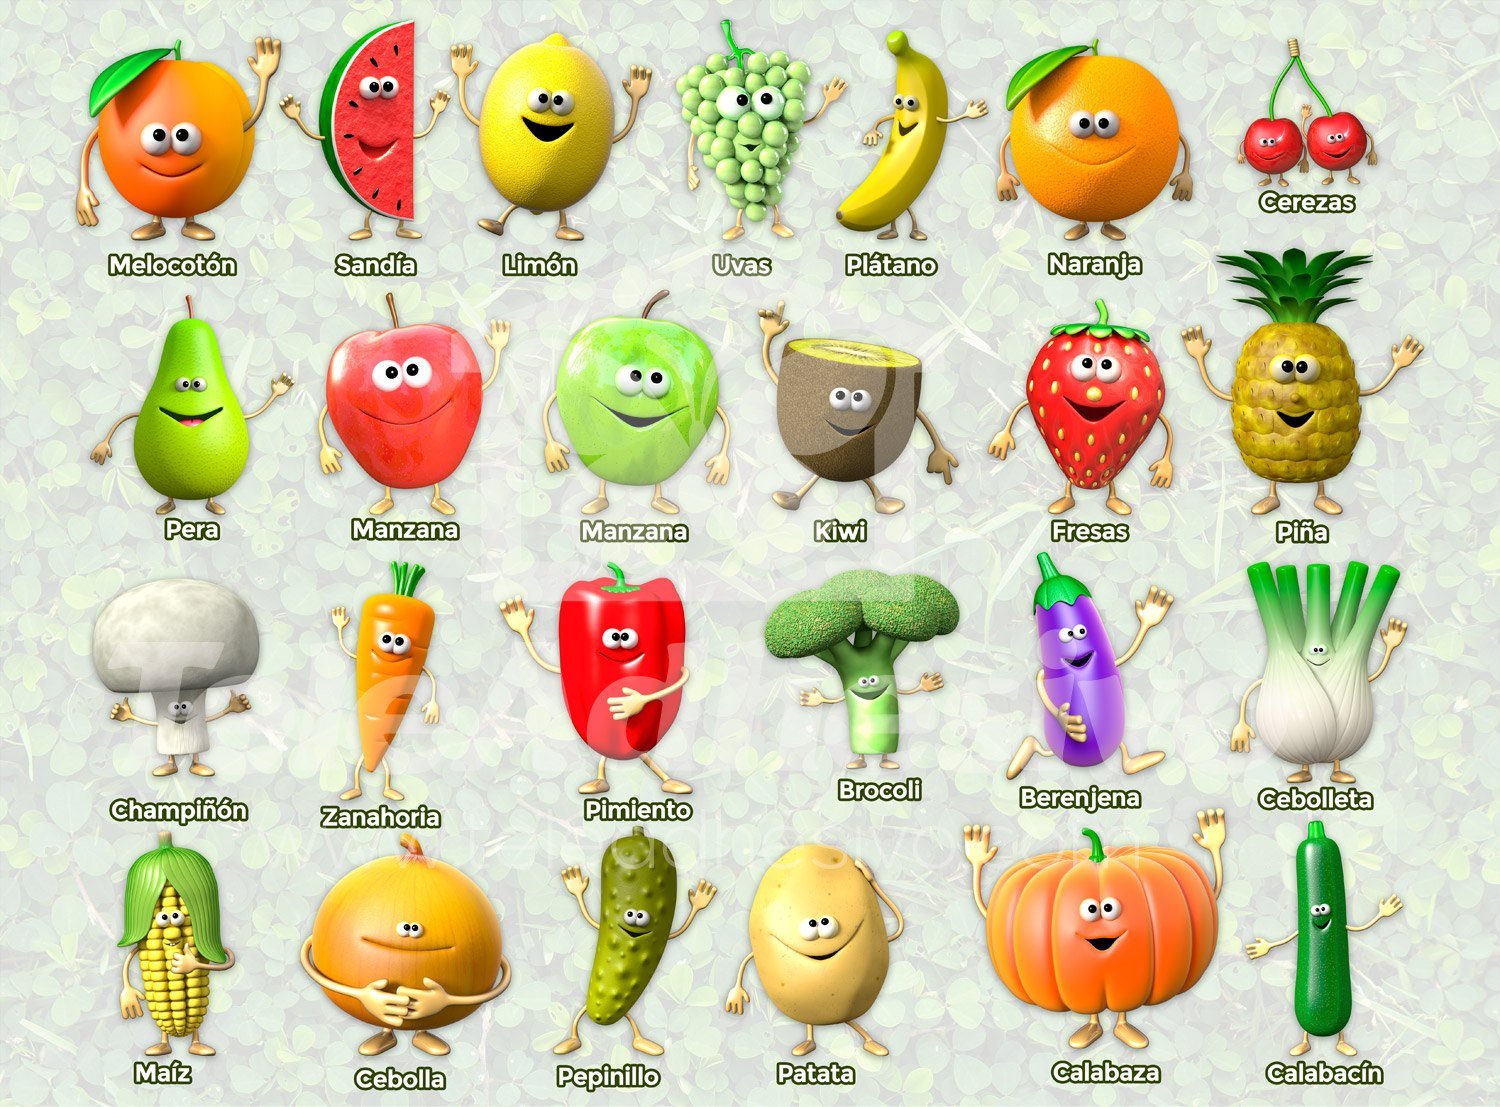 Wordwall vegetables. Доисторические фрукты и овощи. Алфавит из овощей и фруктов. Овощи монстры. Постеры фруктов.